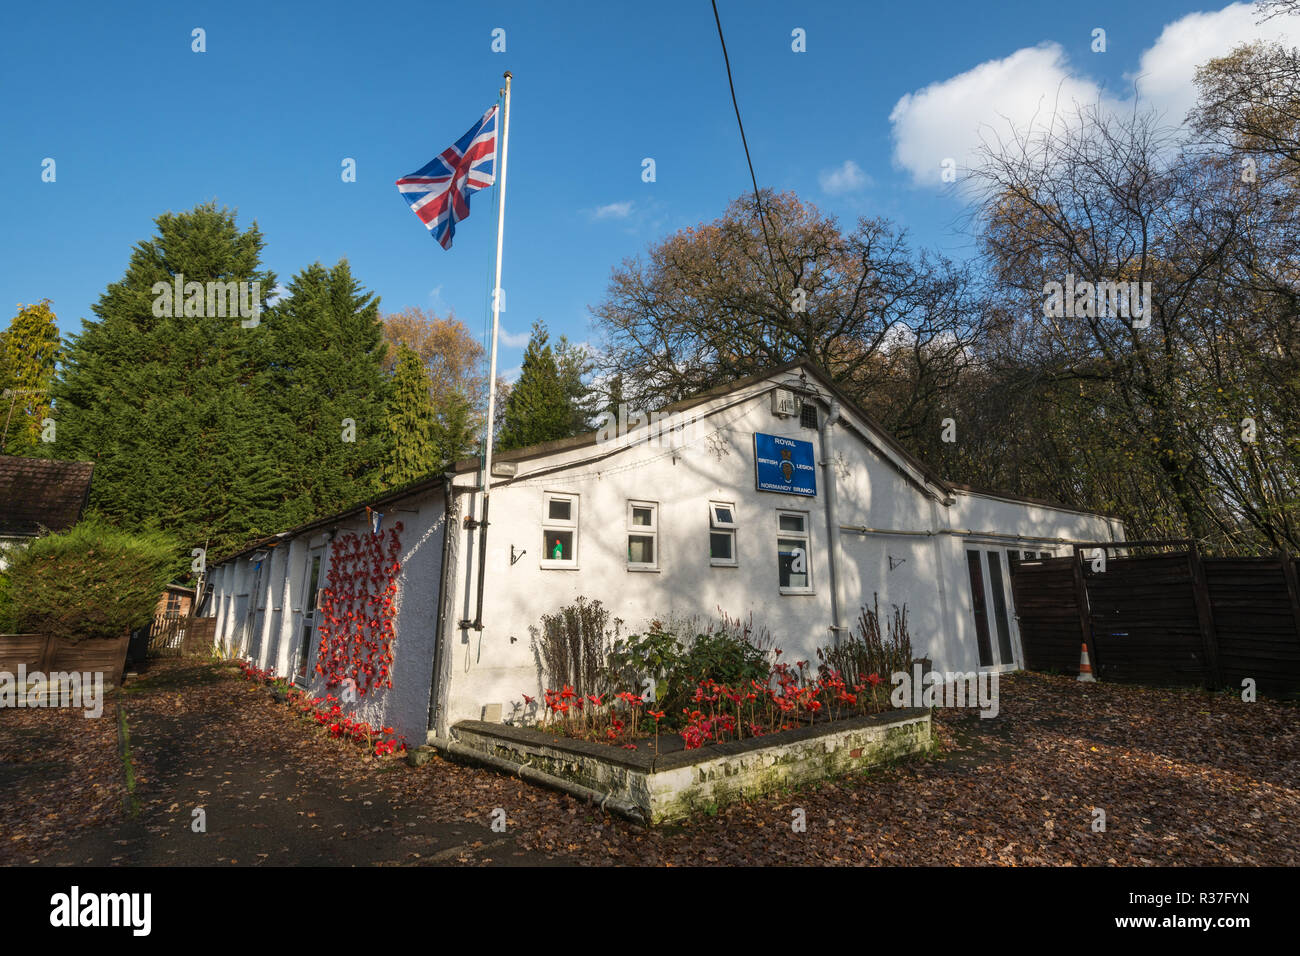 Le Royal British Legion Hall dans le village de Normandie à Surrey, UK, avec un affichage de coquelicots 100 ans après la fin de la première guerre mondiale Banque D'Images